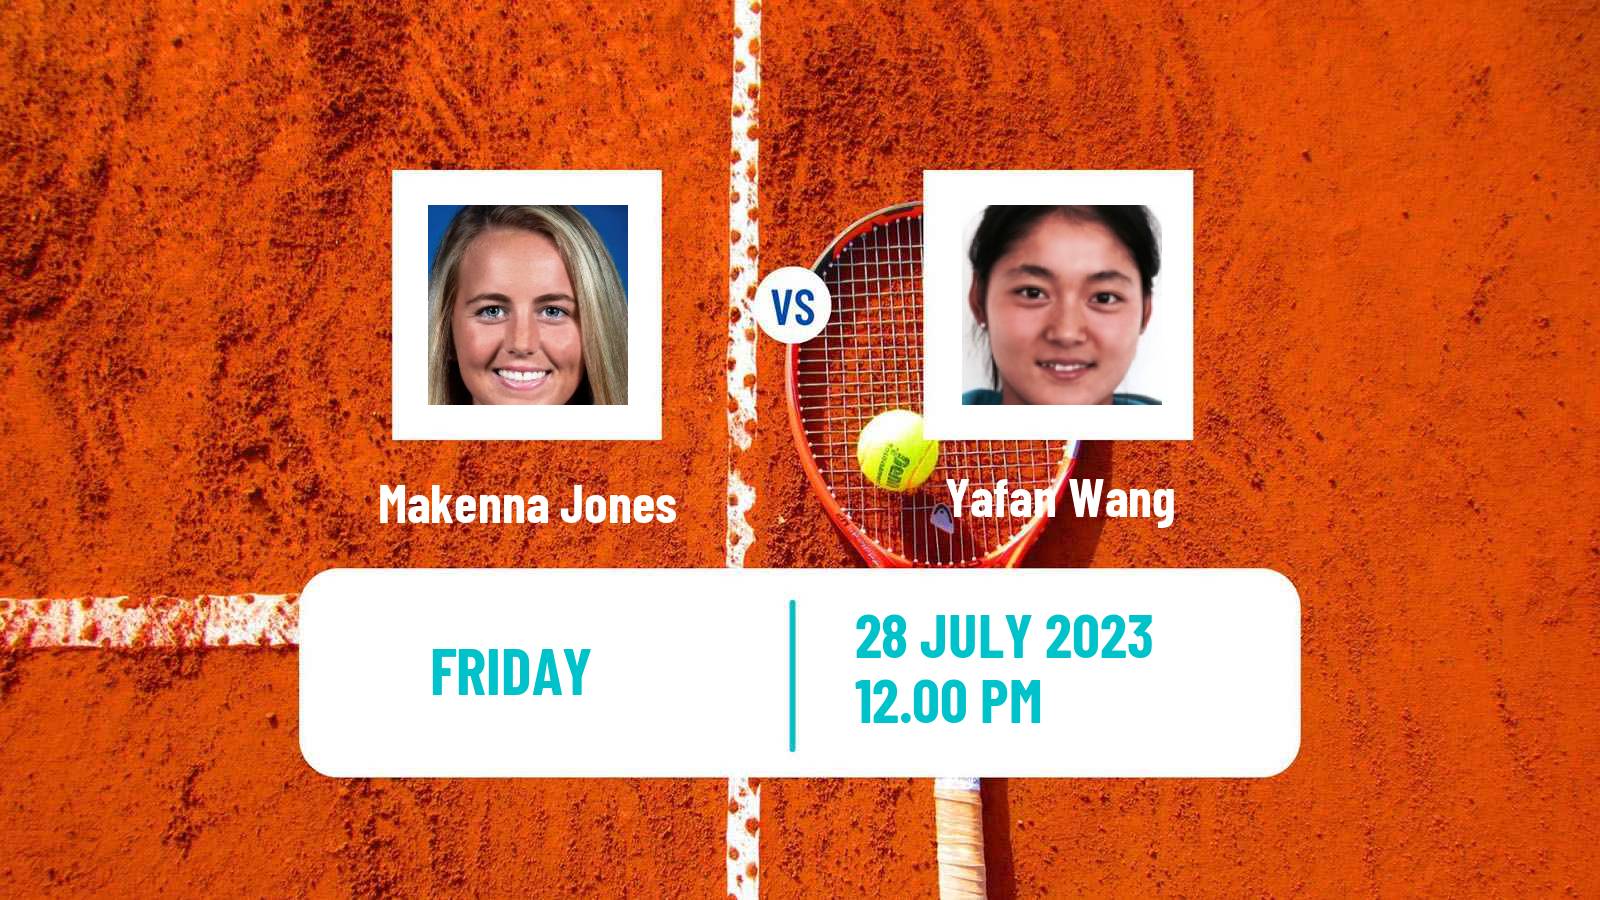 Tennis ITF W60 Dallas Tx Women Makenna Jones - Yafan Wang